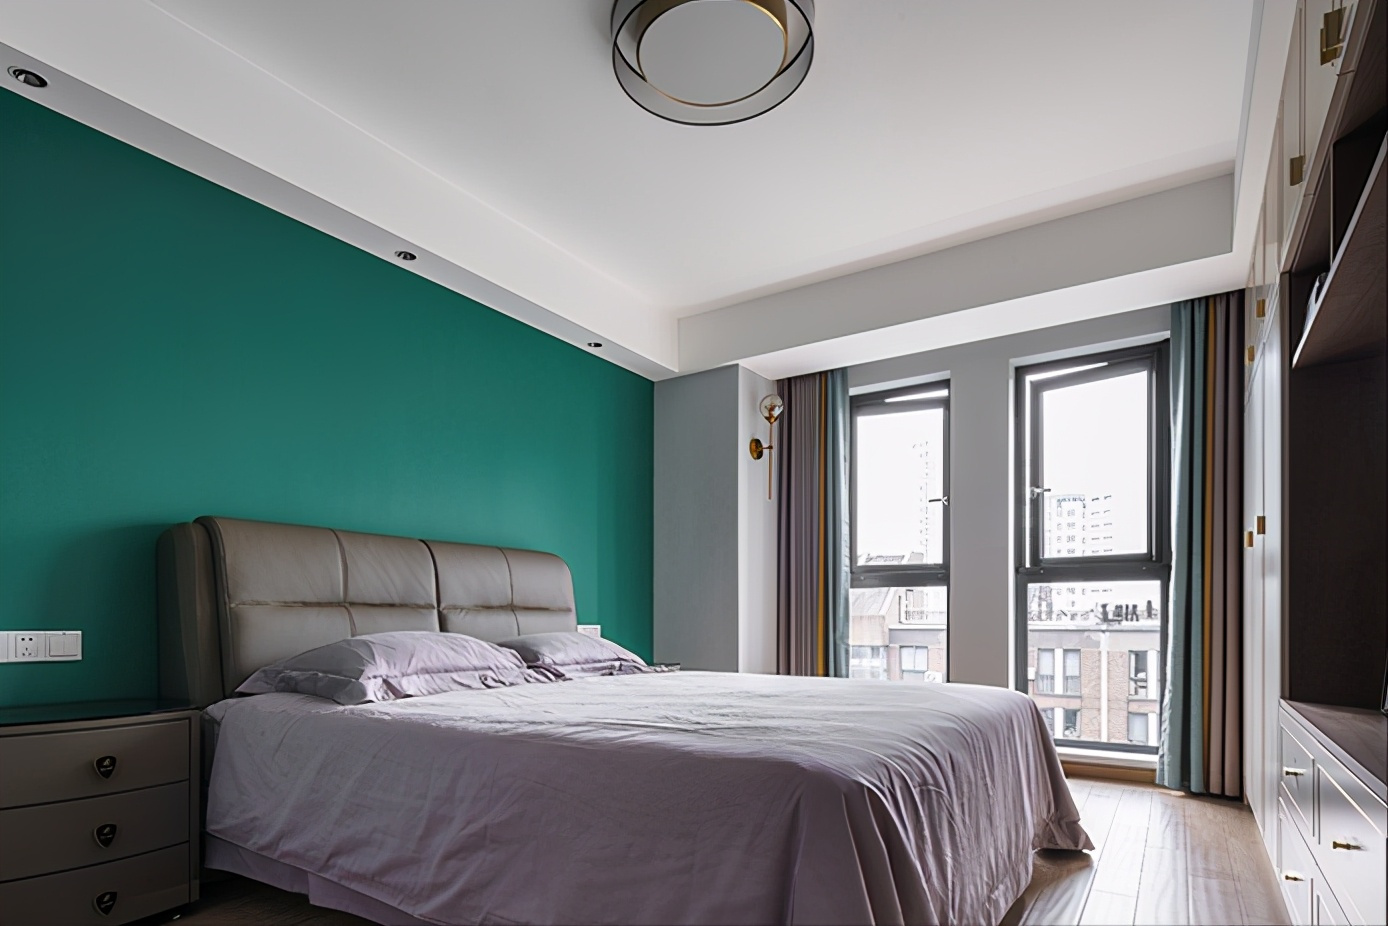 主卧室的床头背景墙是考虑了深蓝色的壁布,整体空间以冷色调为主,让